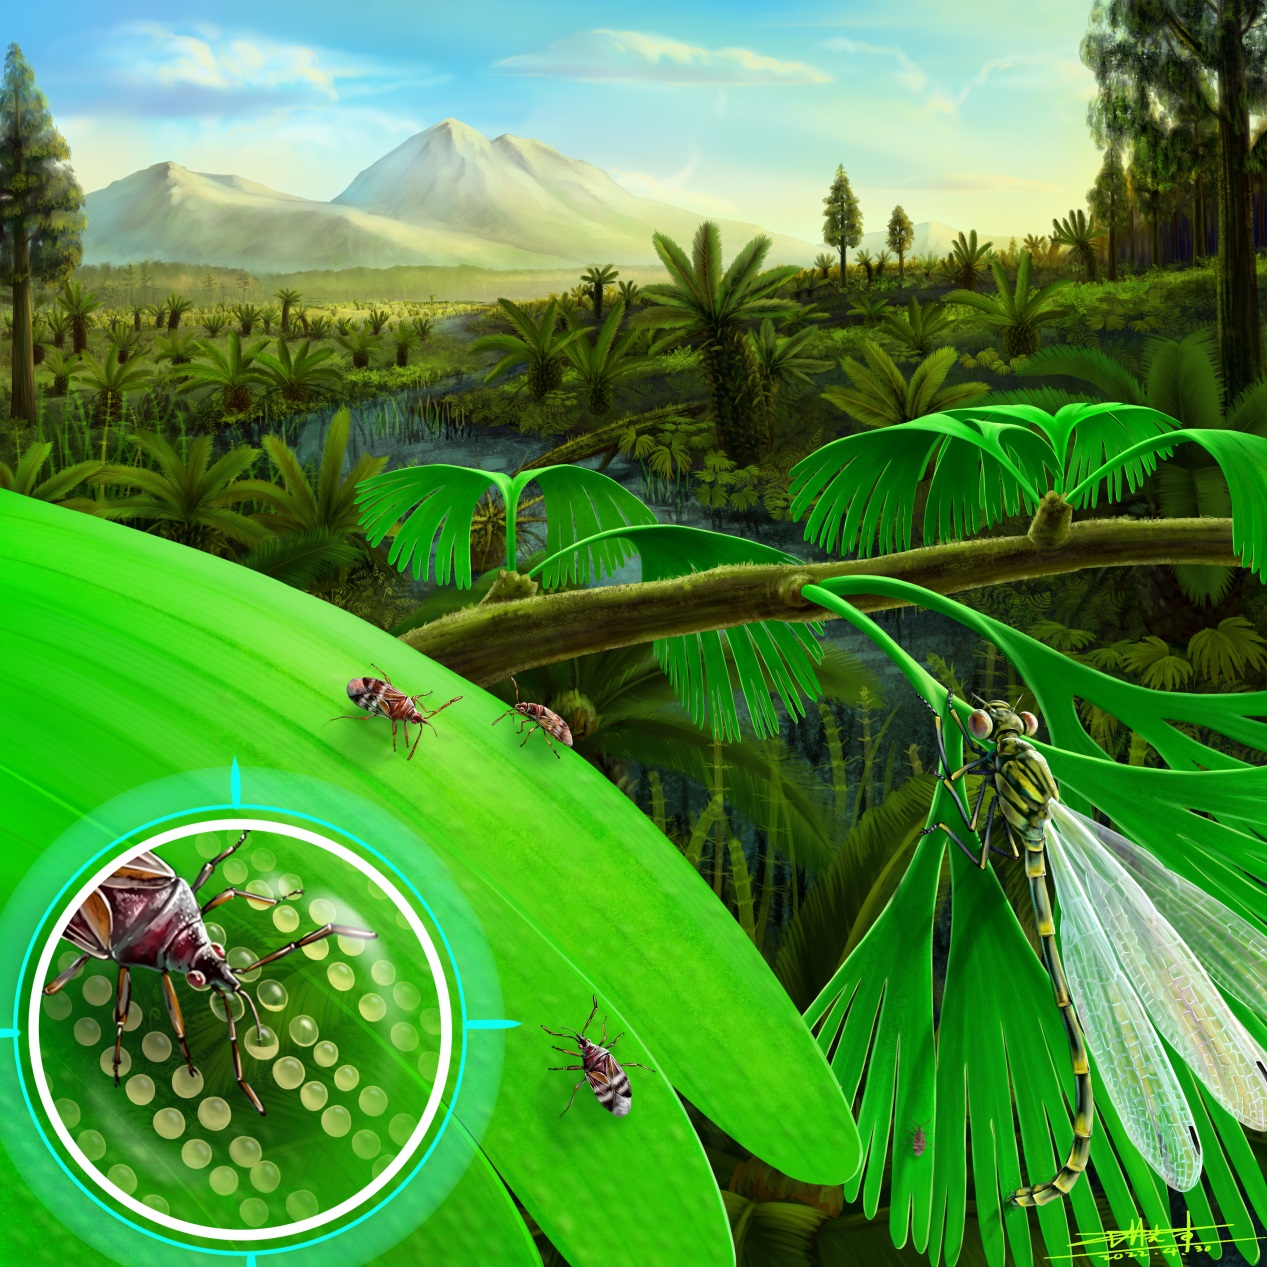 首次为地质历史时期植内产卵昆虫的生殖生物学和行为学提供直接化石证据